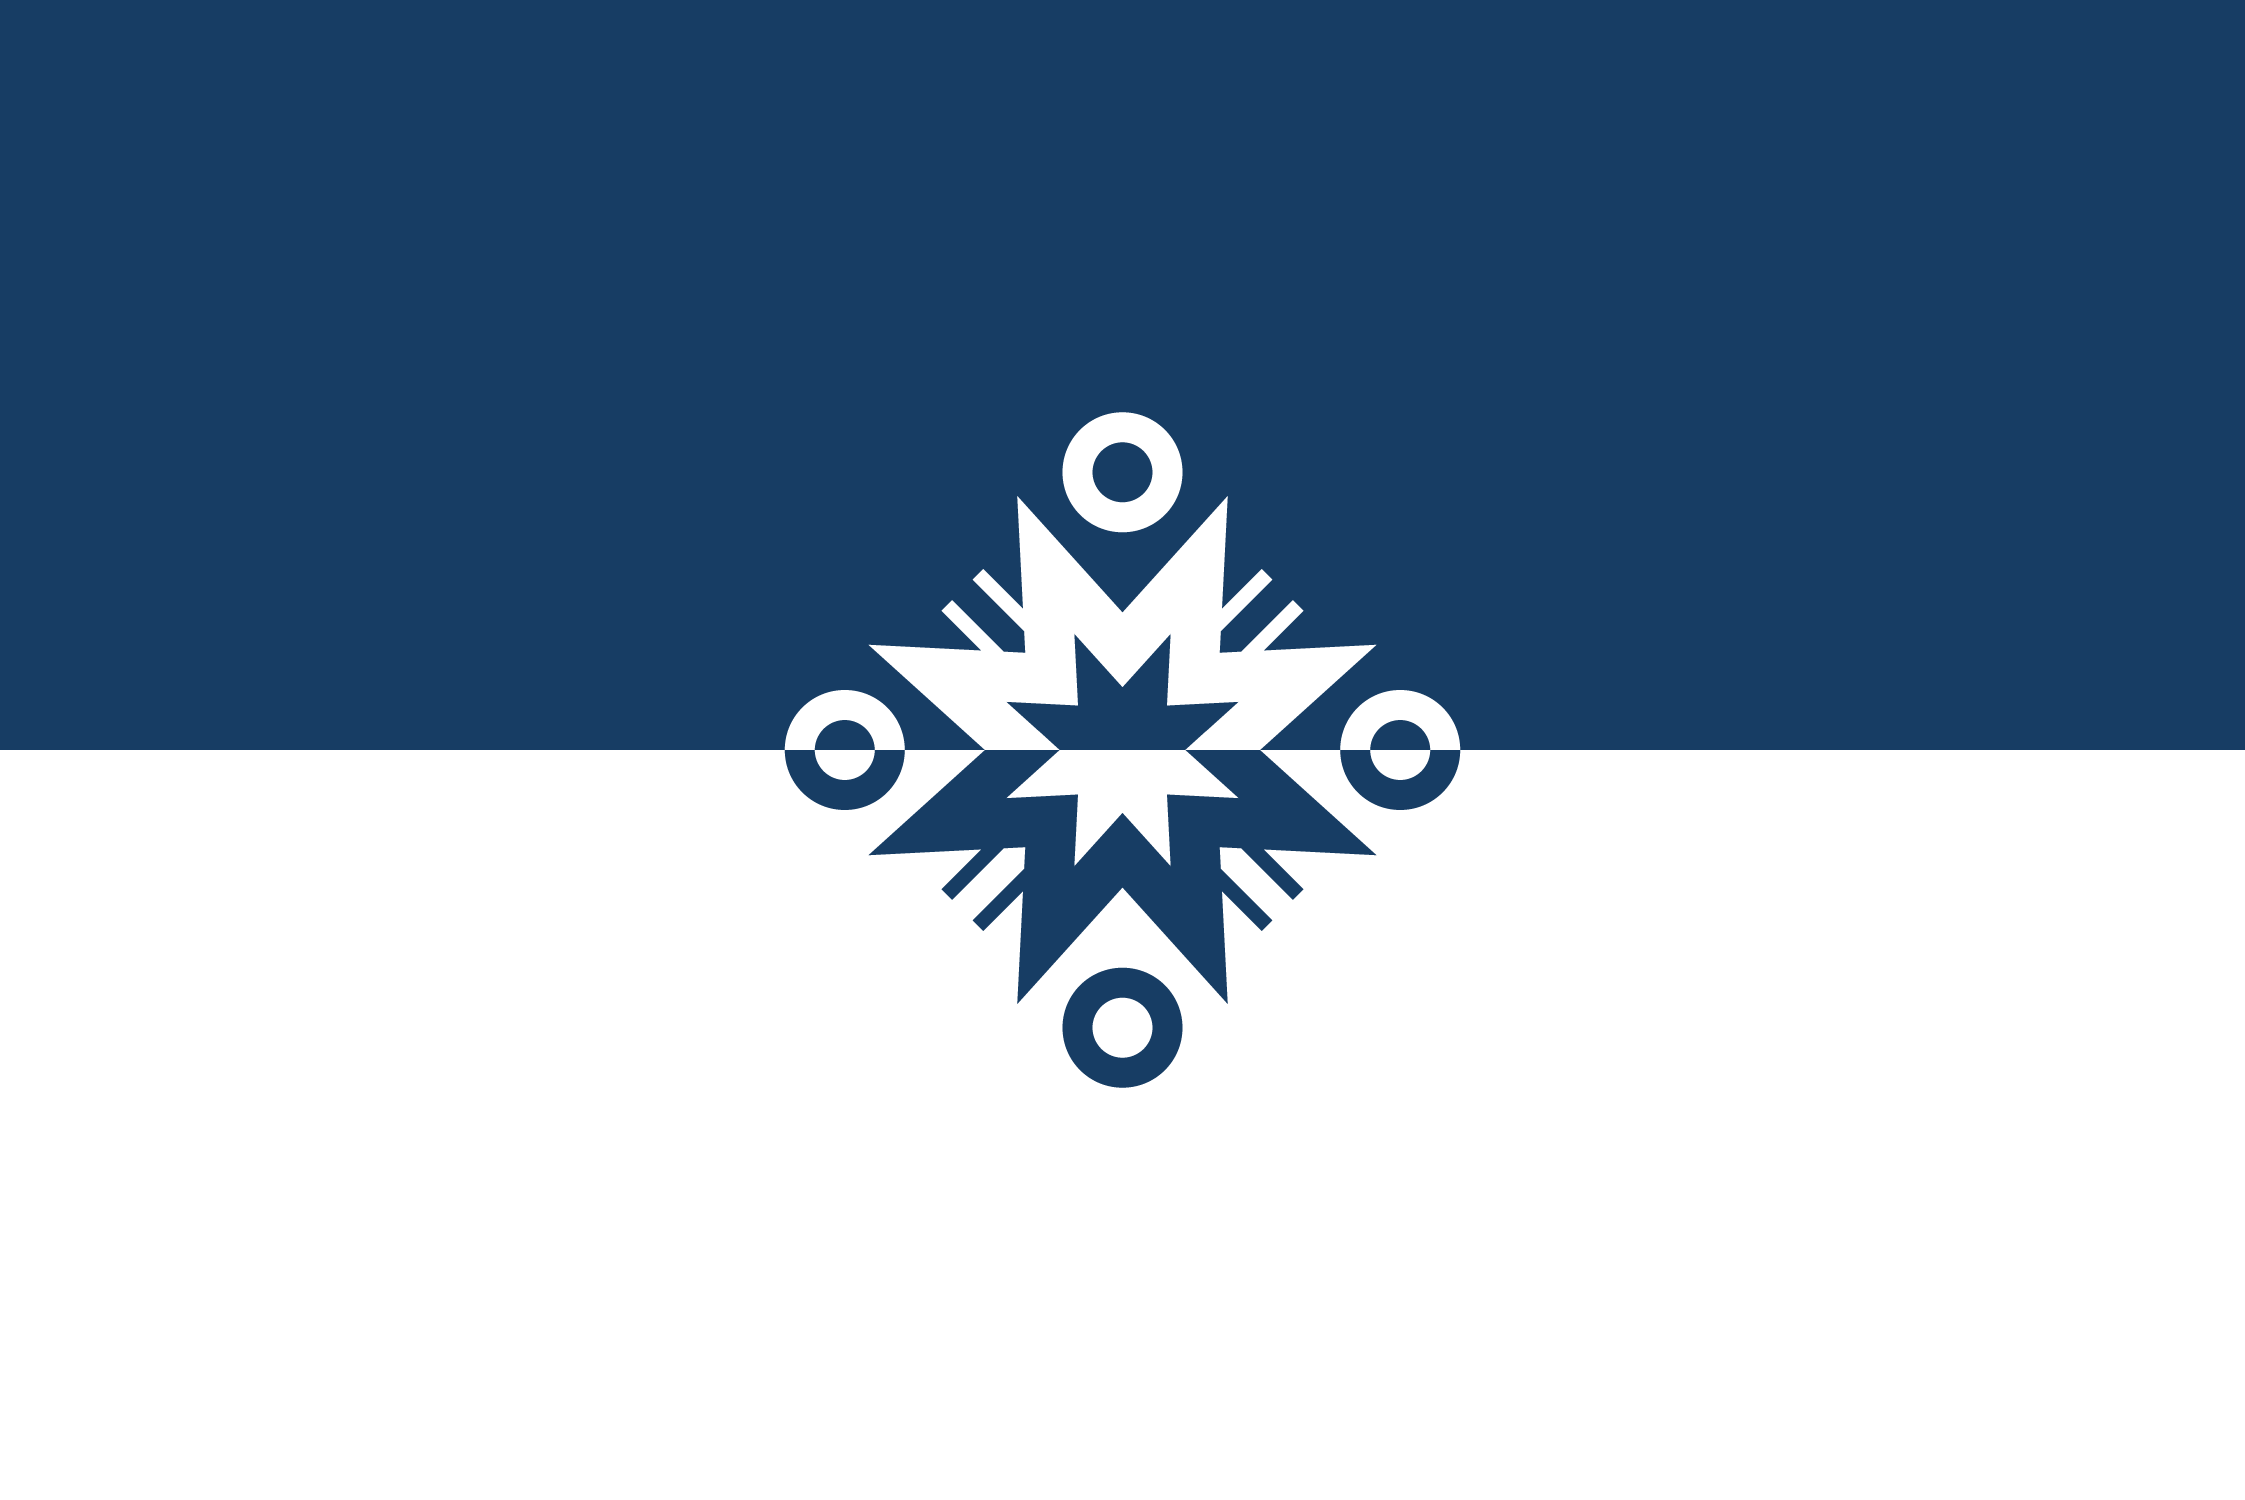 Saralian flag